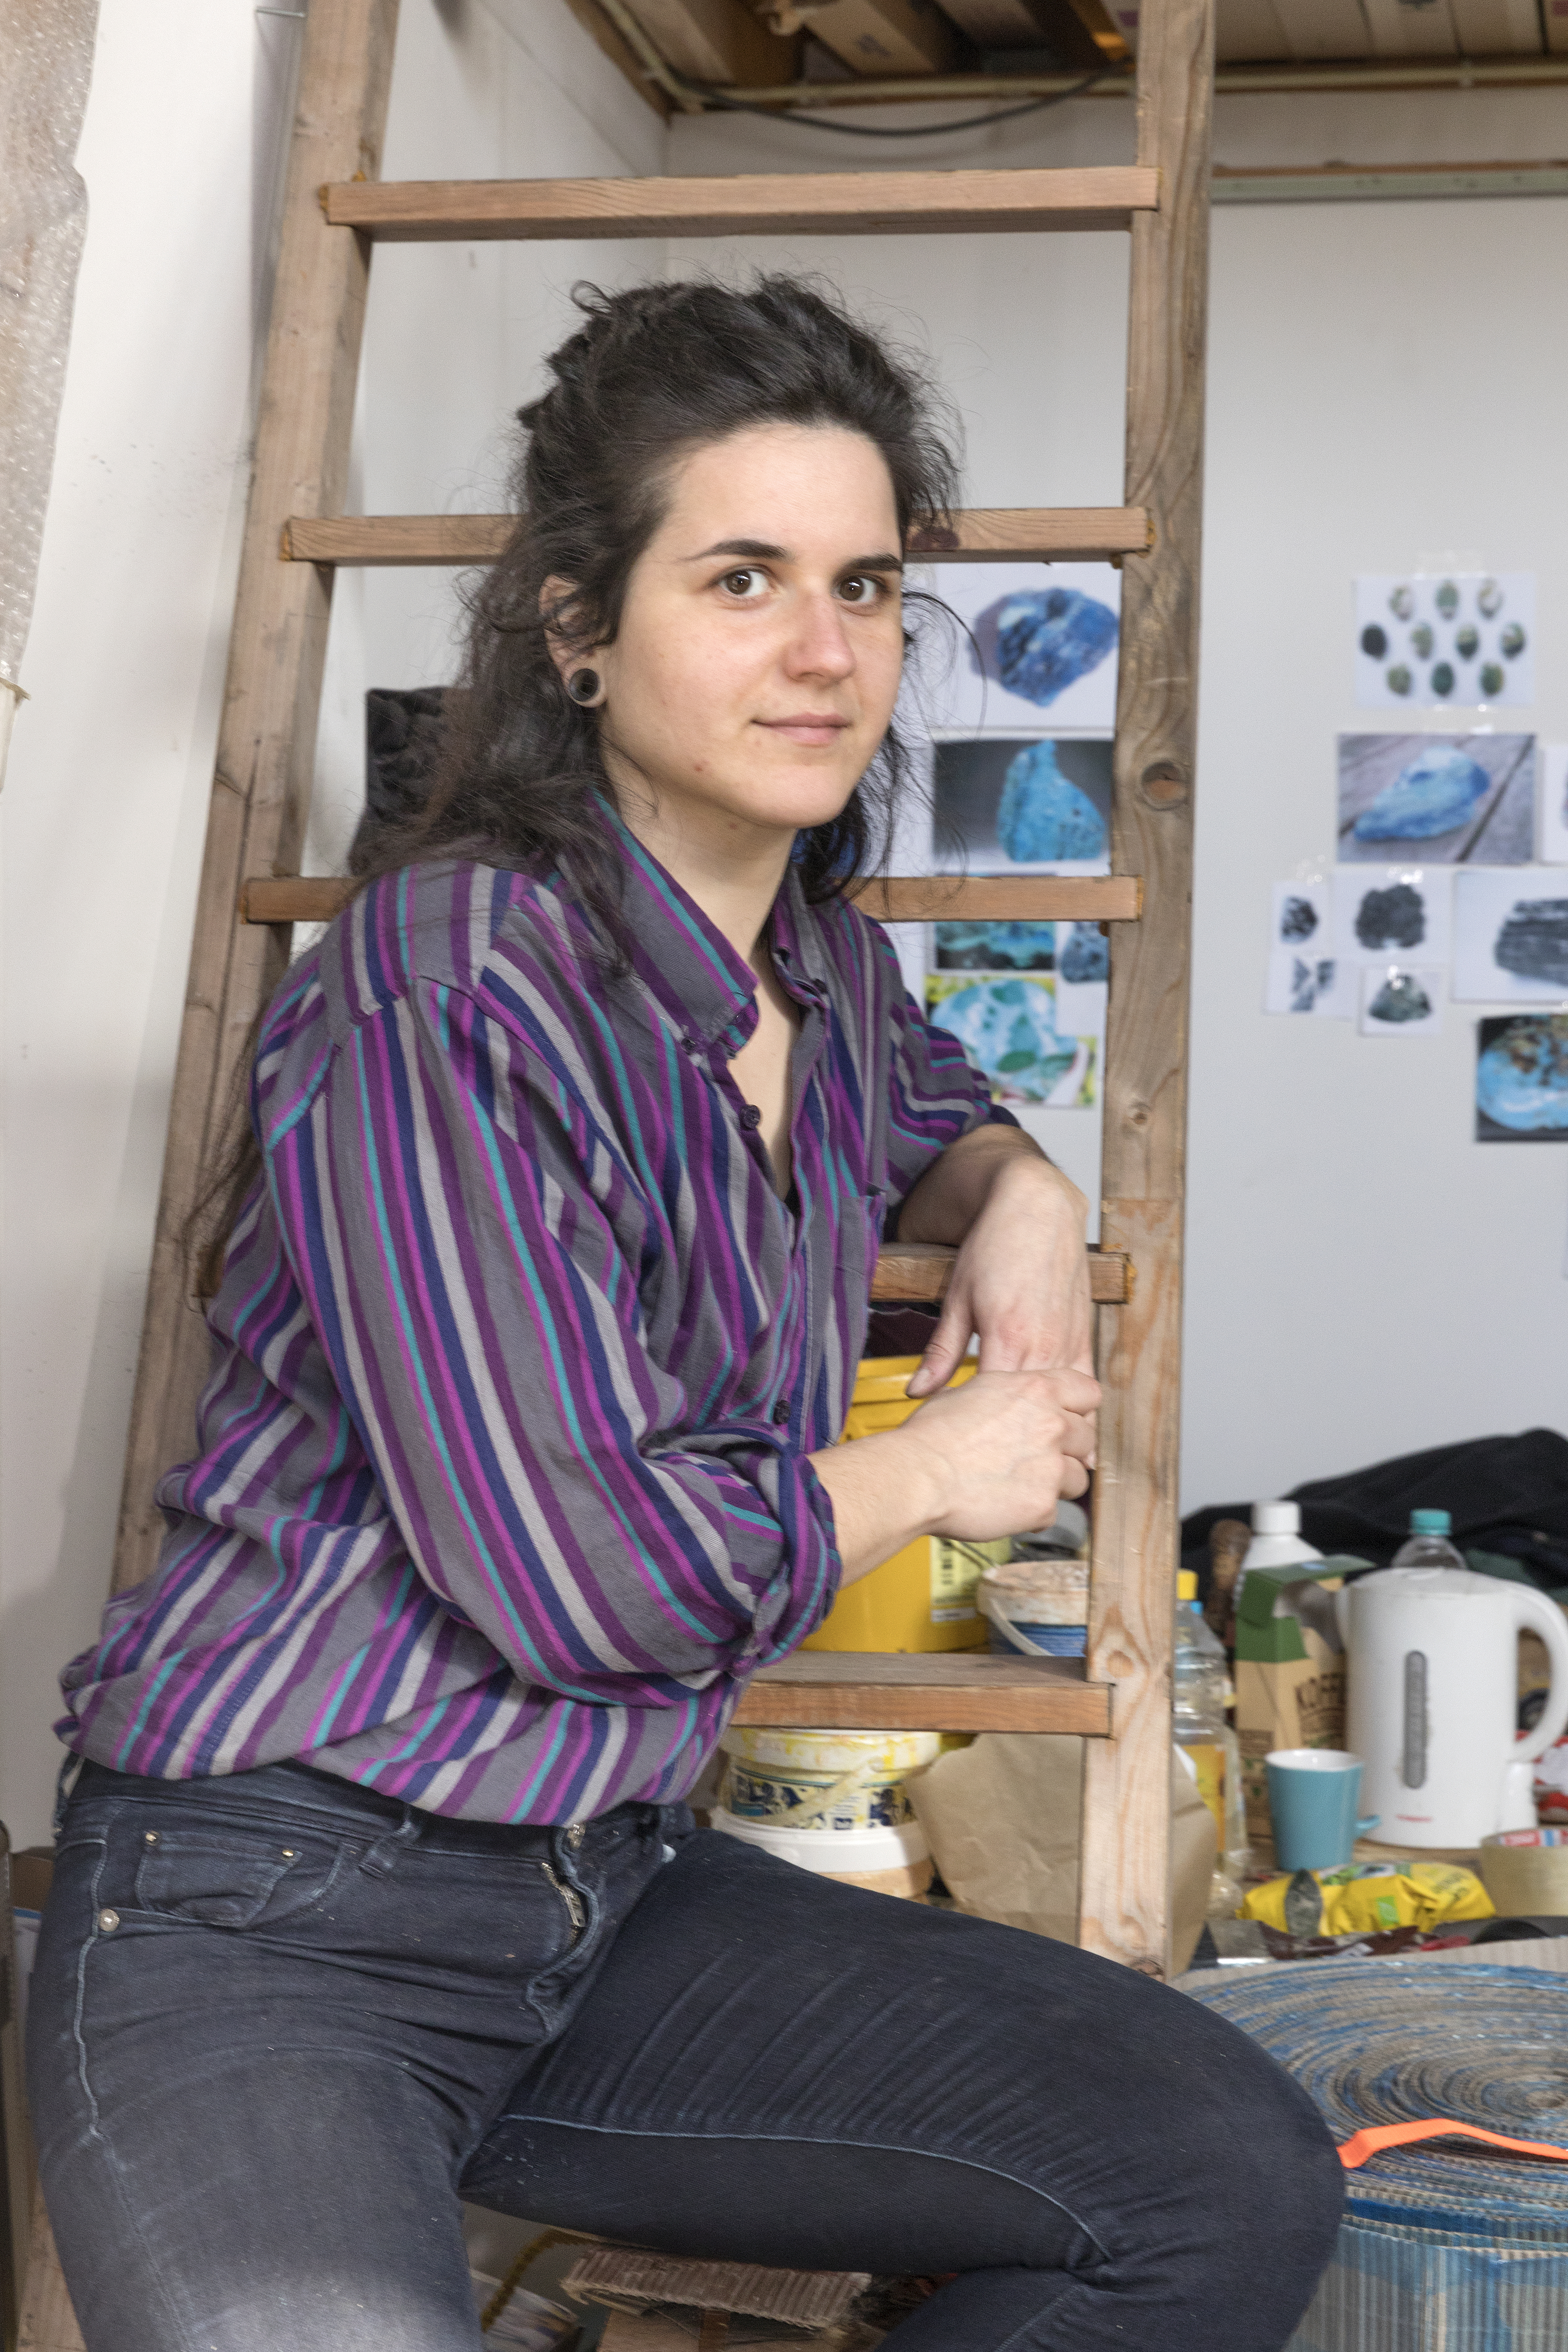 Matea Bakula leunt, gekleed in een paars gestreept overhemd en zwarte spijkerbroek, tegen een ladder in haar atelier. Op de achtergrond zijn materialen en schetsen te zien